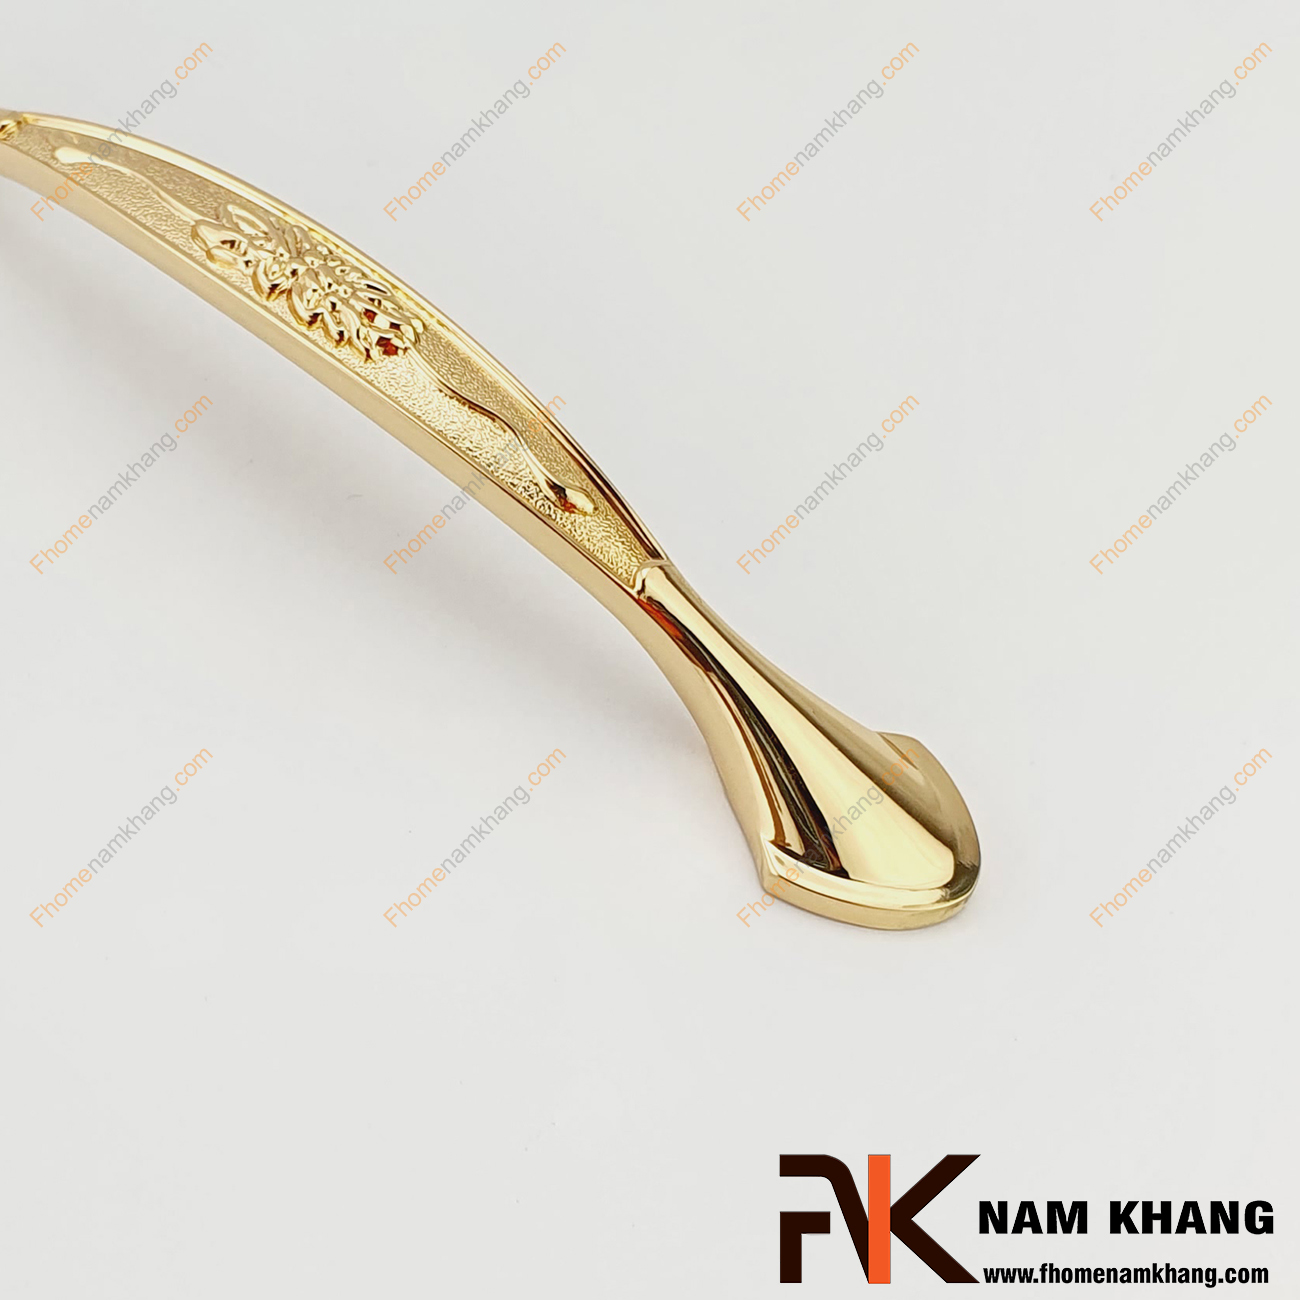 Tay nắm tủ mạ vàng NK037-24K có họa tiết chủ đạo hoa lá nho cổ điển. Sản phẩm được mạ vàng bóng ánh kim và được gia công hoàn thiện mặt mỹ thuật.